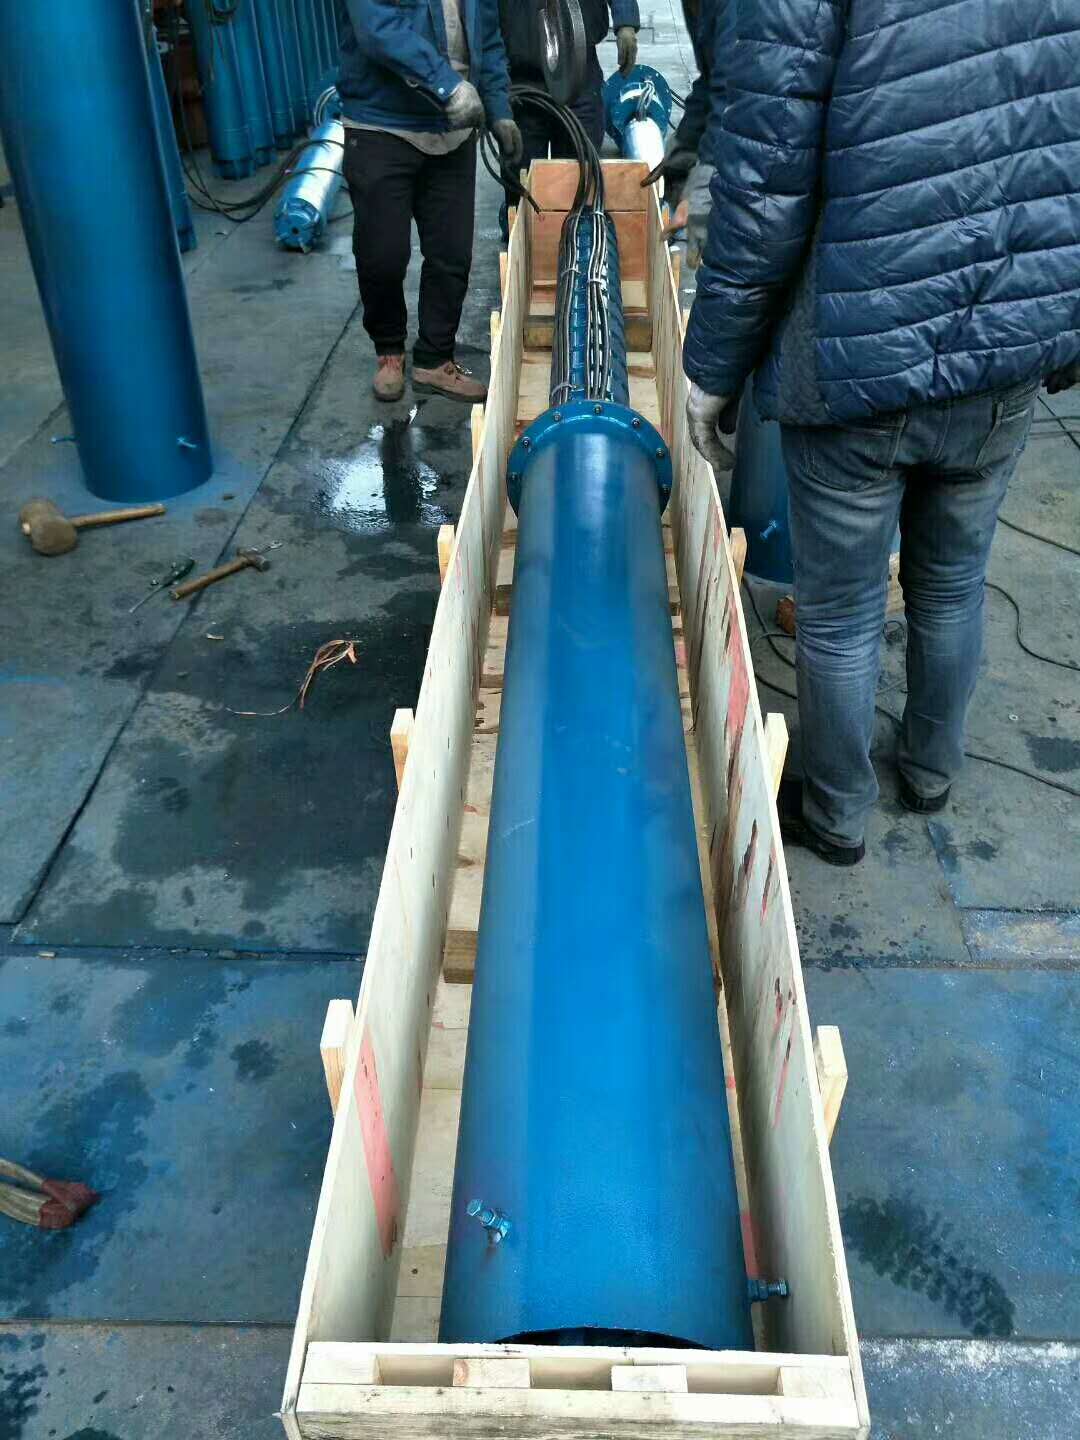 250型160千瓦潜水泵天津塘沽滨海新区送货第1张-潜水电机-潜水电泵-高压潜水电机-天津潜成泵业